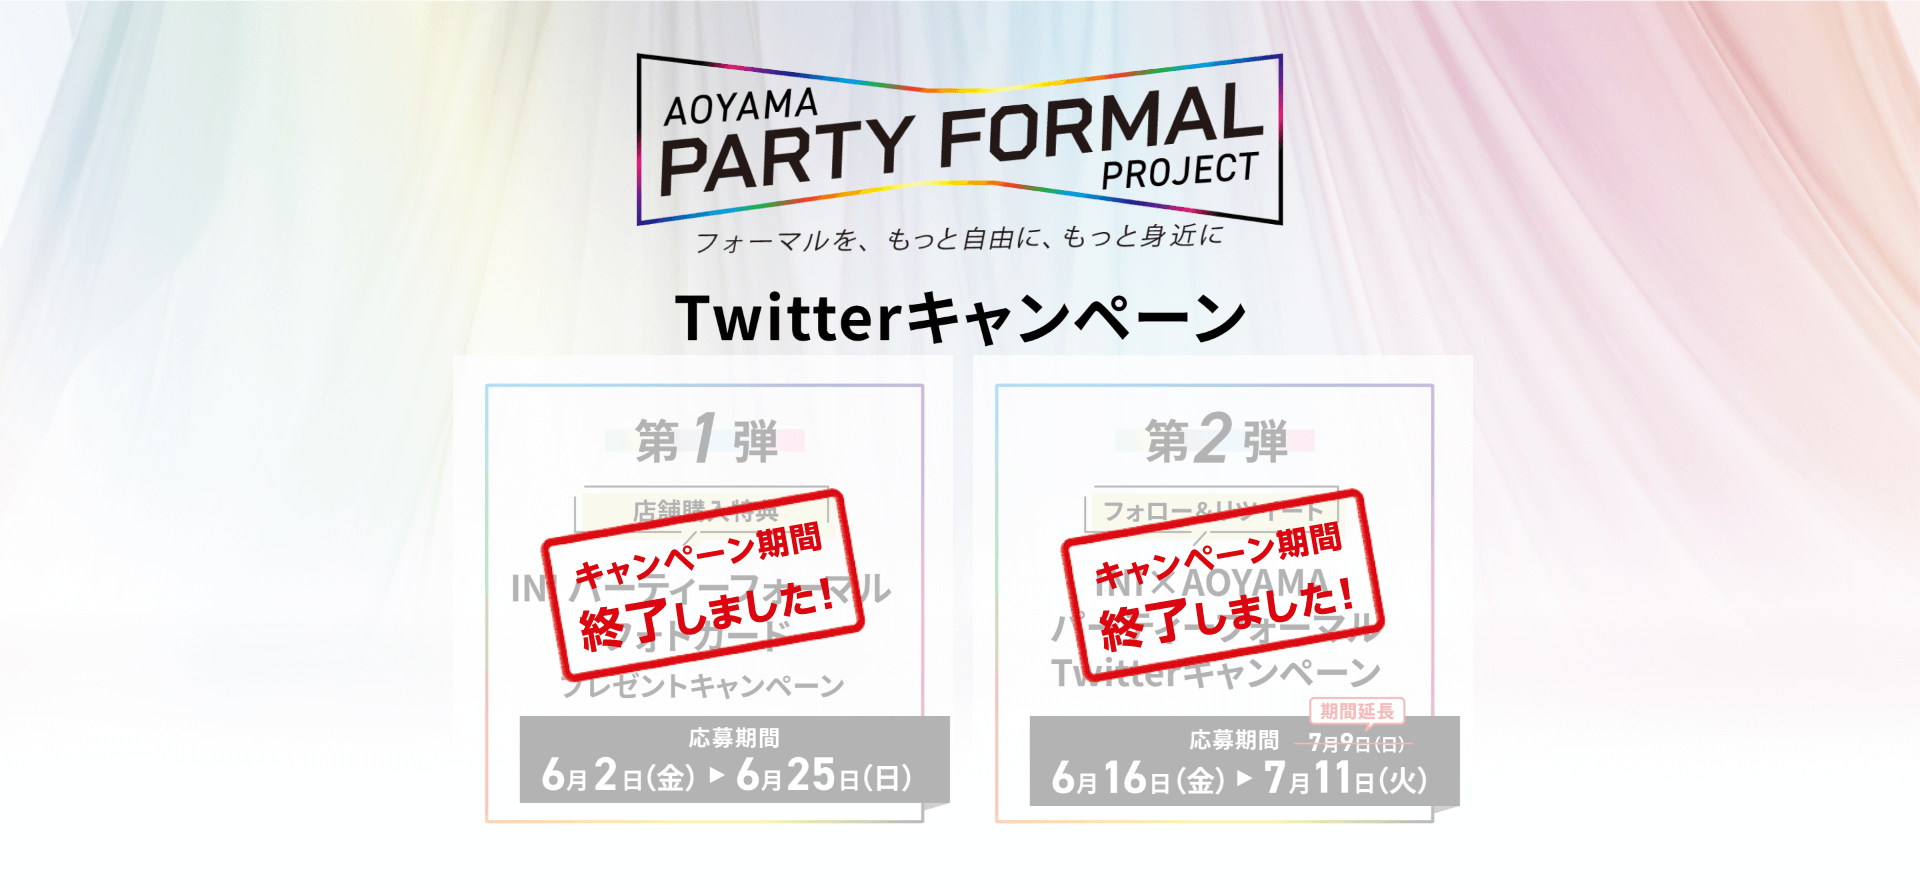 AOYAMA PARTY FORMAL PROJECT フォーマルを、もっと自由に、もっと身近に ツイッターキャンペーン